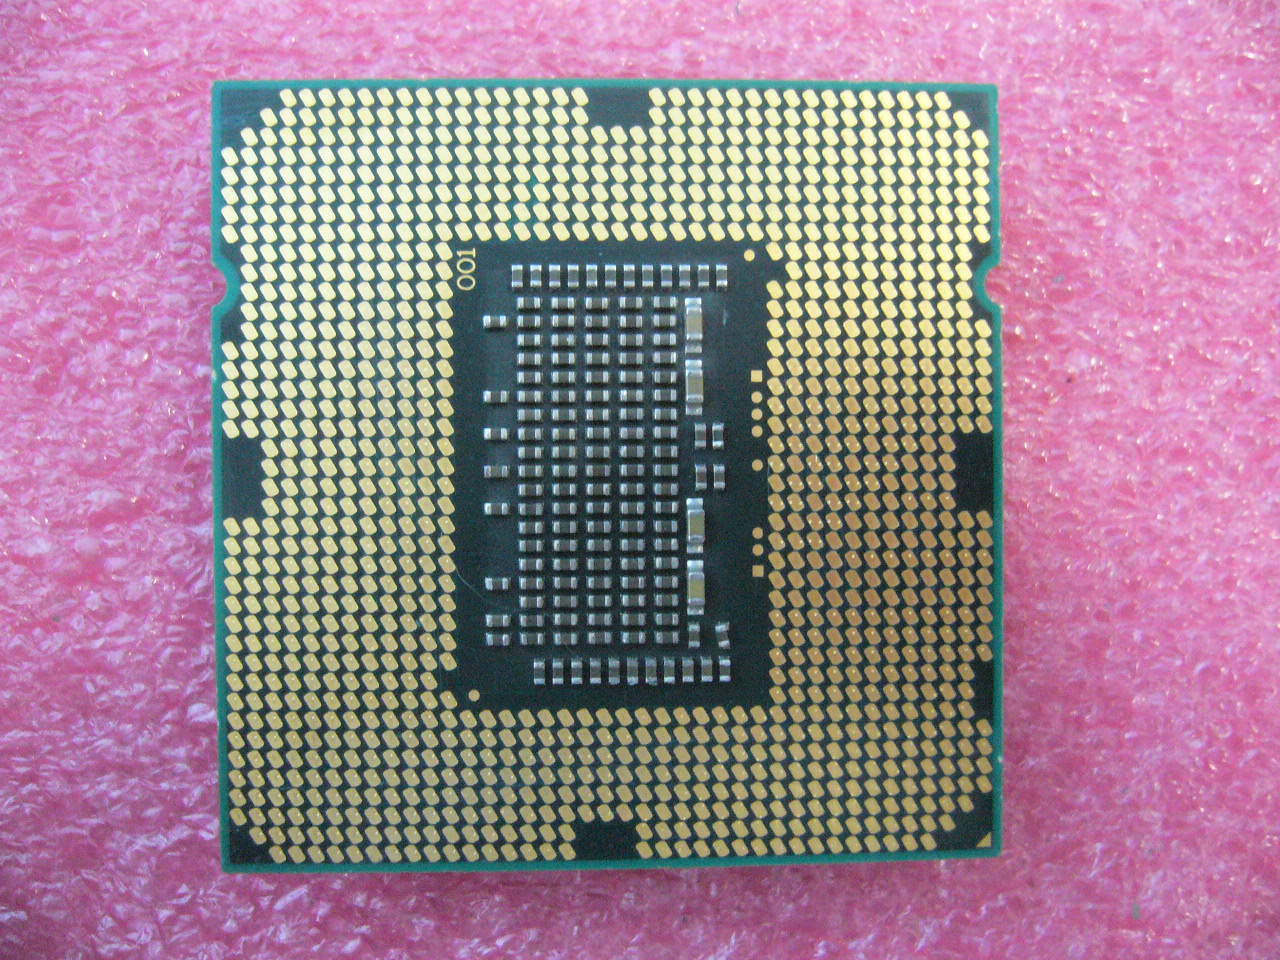 QTY 1x Intel CPU i5-760 Quad-Cores 2.80Ghz/8MB LGA1156 SLBRP - Click Image to Close